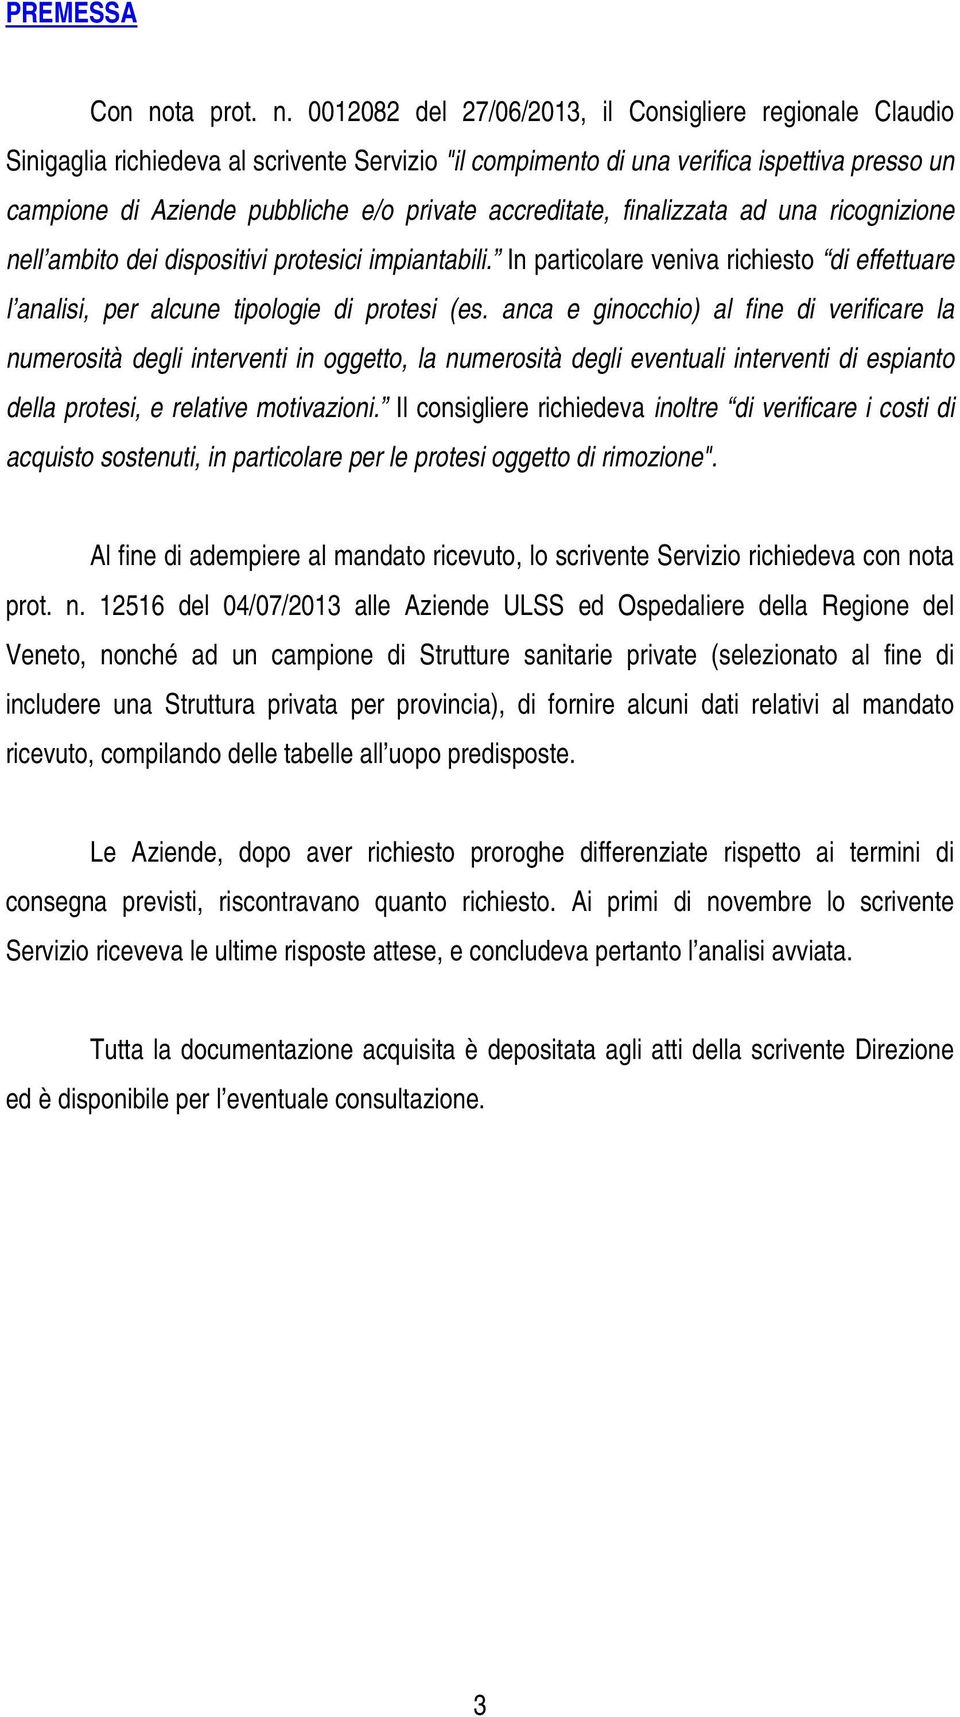 0012082 del 27/06/2013, il Consigliere regionale Claudio Sinigaglia richiedeva al scrivente Servizio "il compimento di una verifica ispettiva presso un campione di Aziende pubbliche e/o private